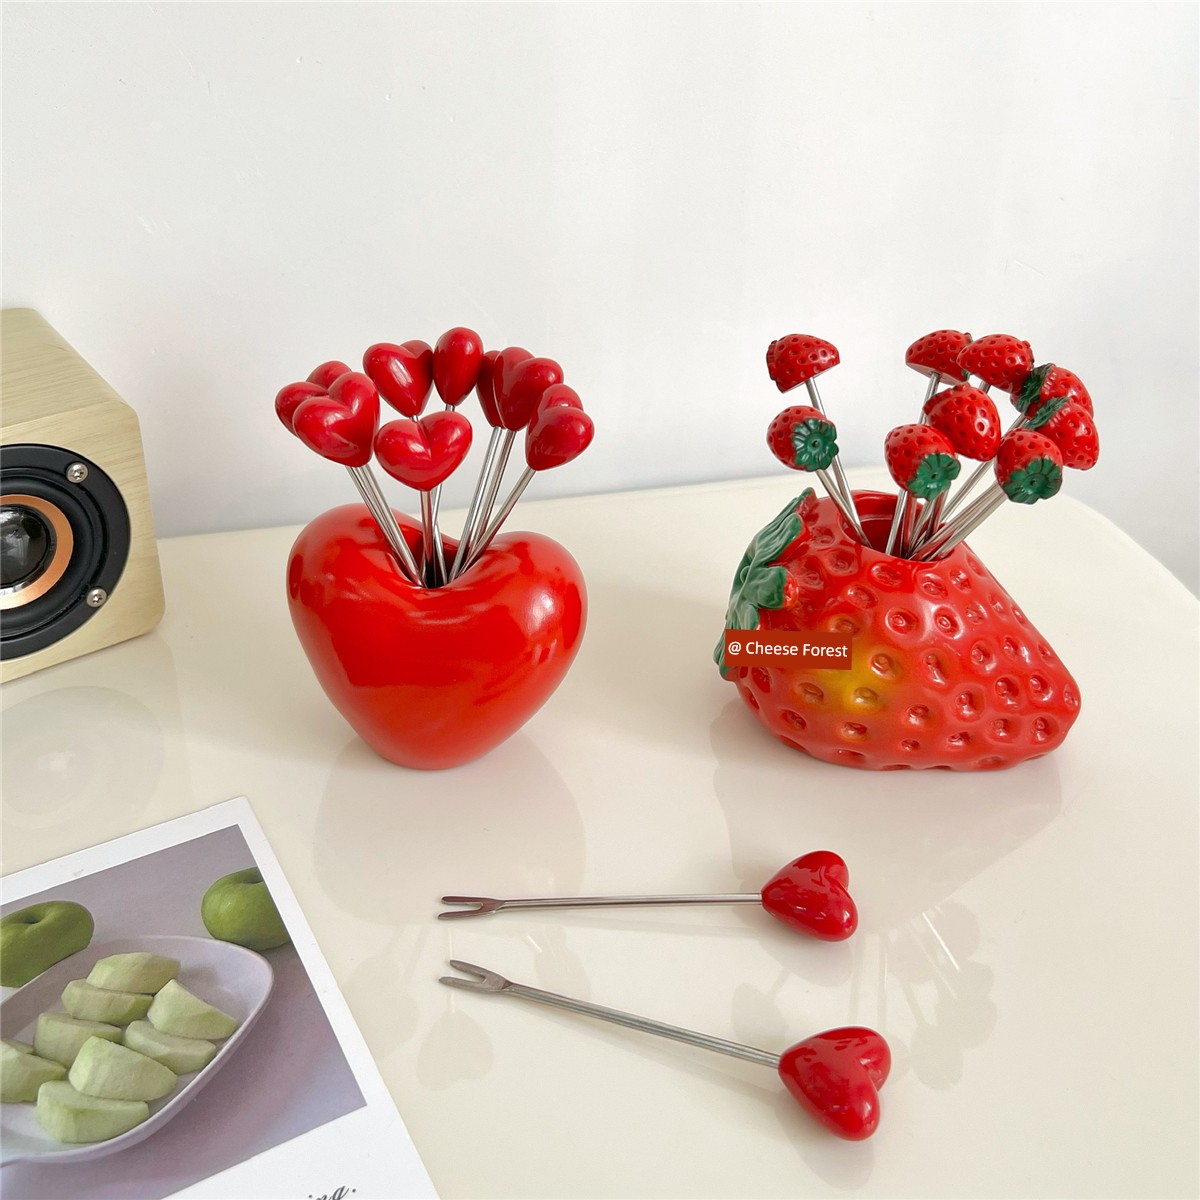 創意愛心草莓水果叉水果簽西餐厛可愛食品叉子環保不鏽鋼家用竹簽